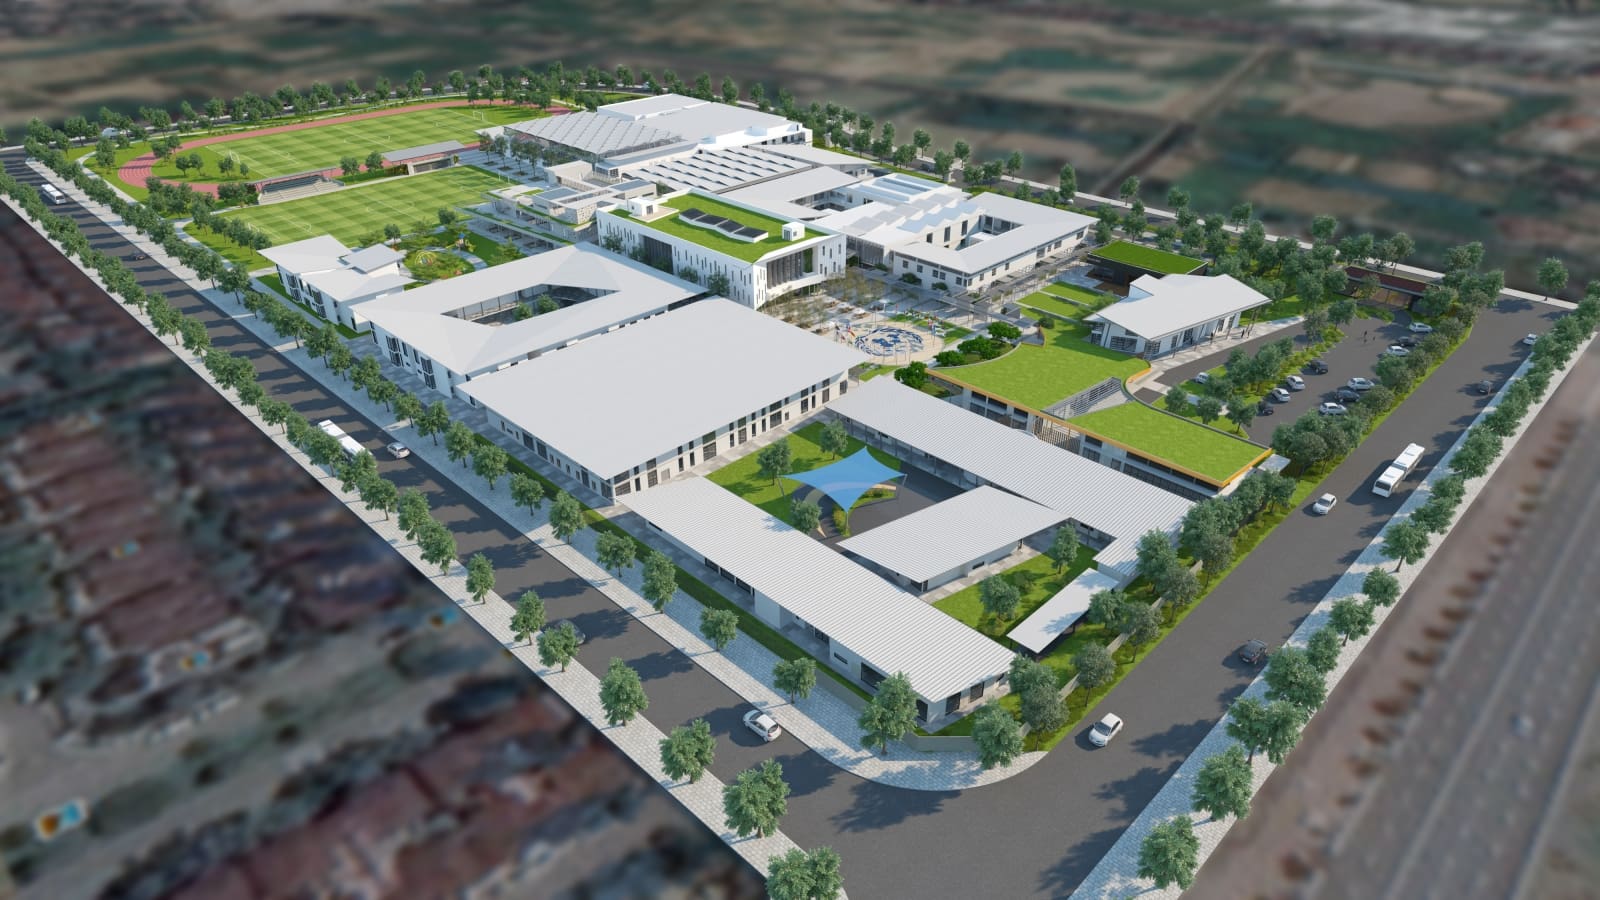 rendered image of aerial view of UNIS School